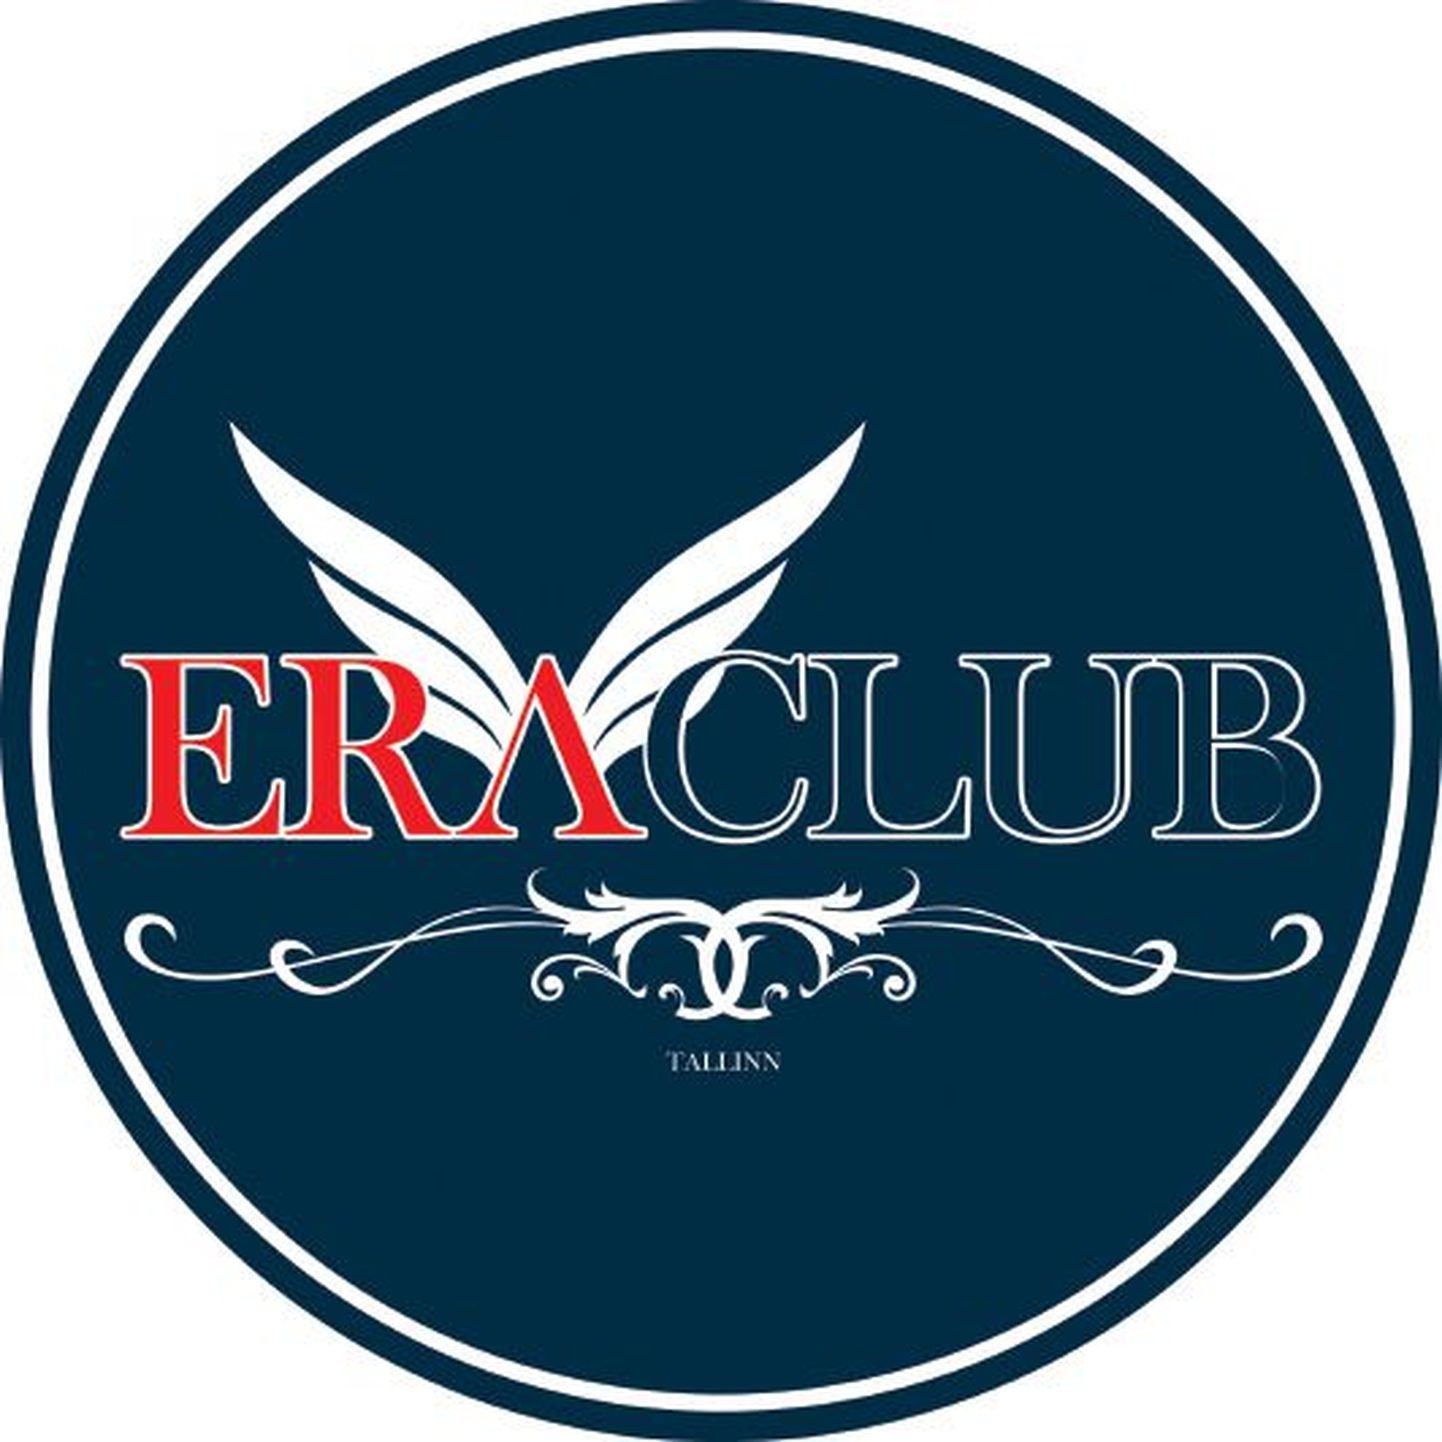 Era Club